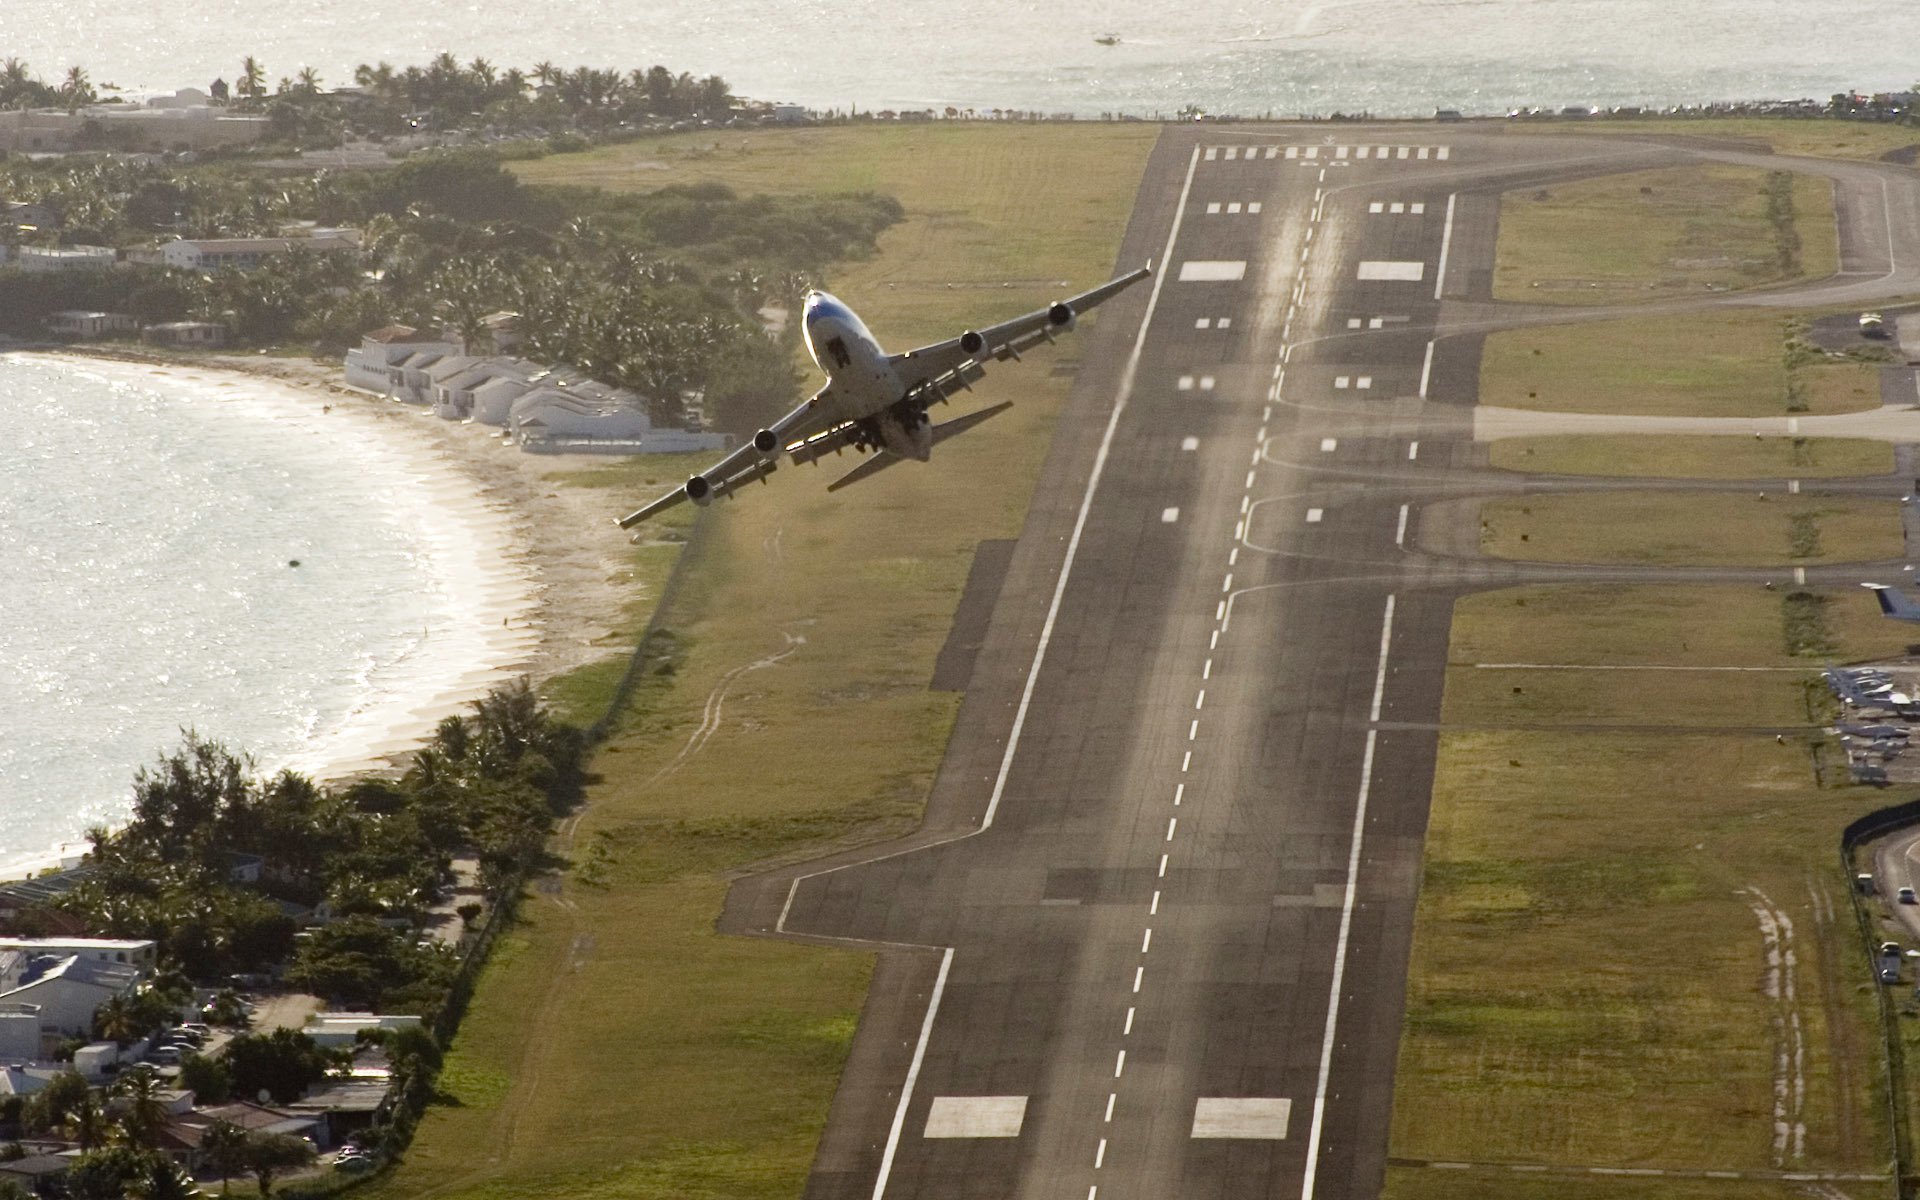 боинг klm airfrance аэропорт пассажирский самолёт взлётная полоса впп остров море океан